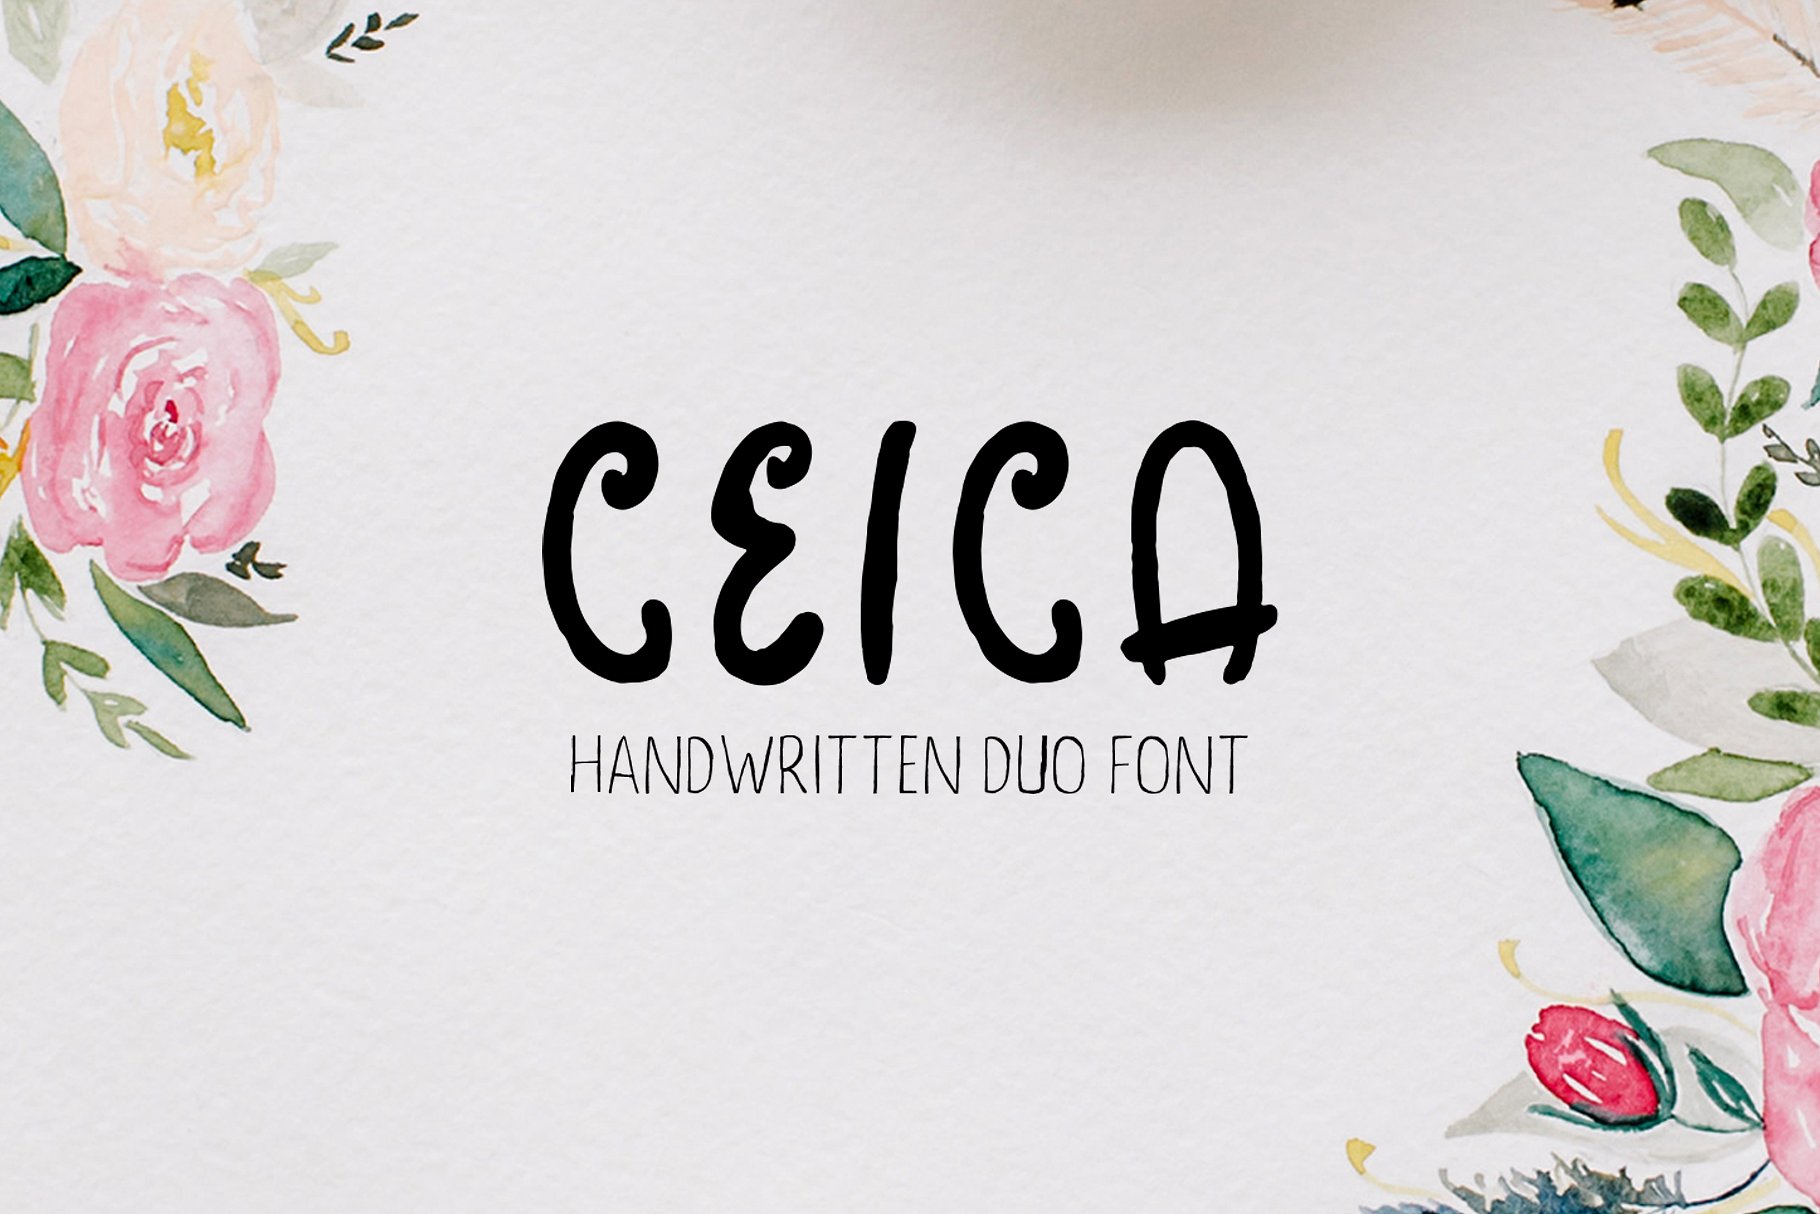 优雅的手写英文字体及手绘花叶花圈素材 Ceica Handwritten Duo Font插图